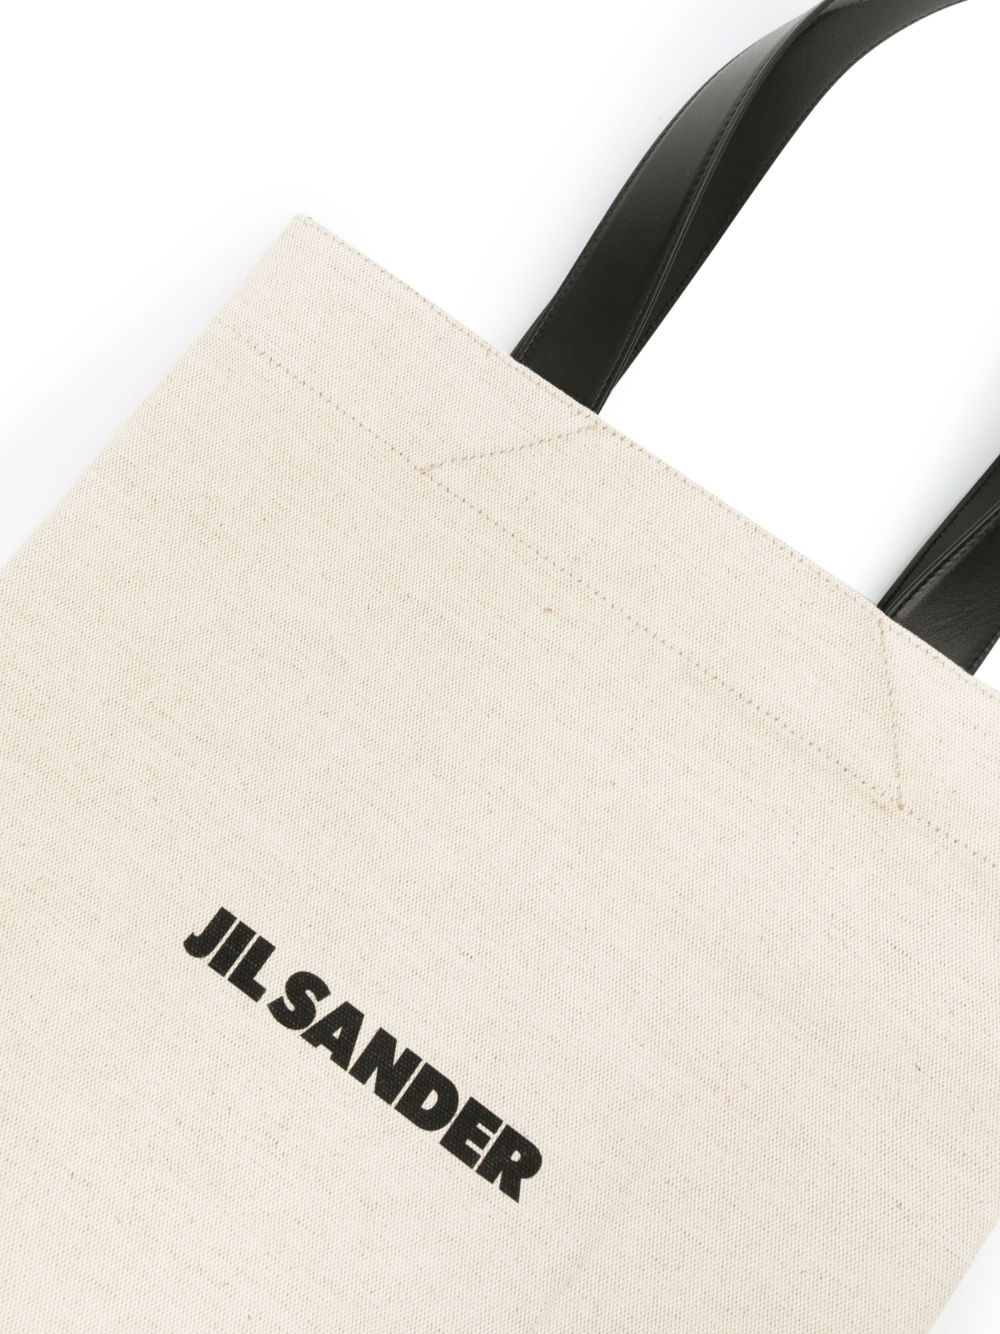 Book tote linen shopping bag - 5